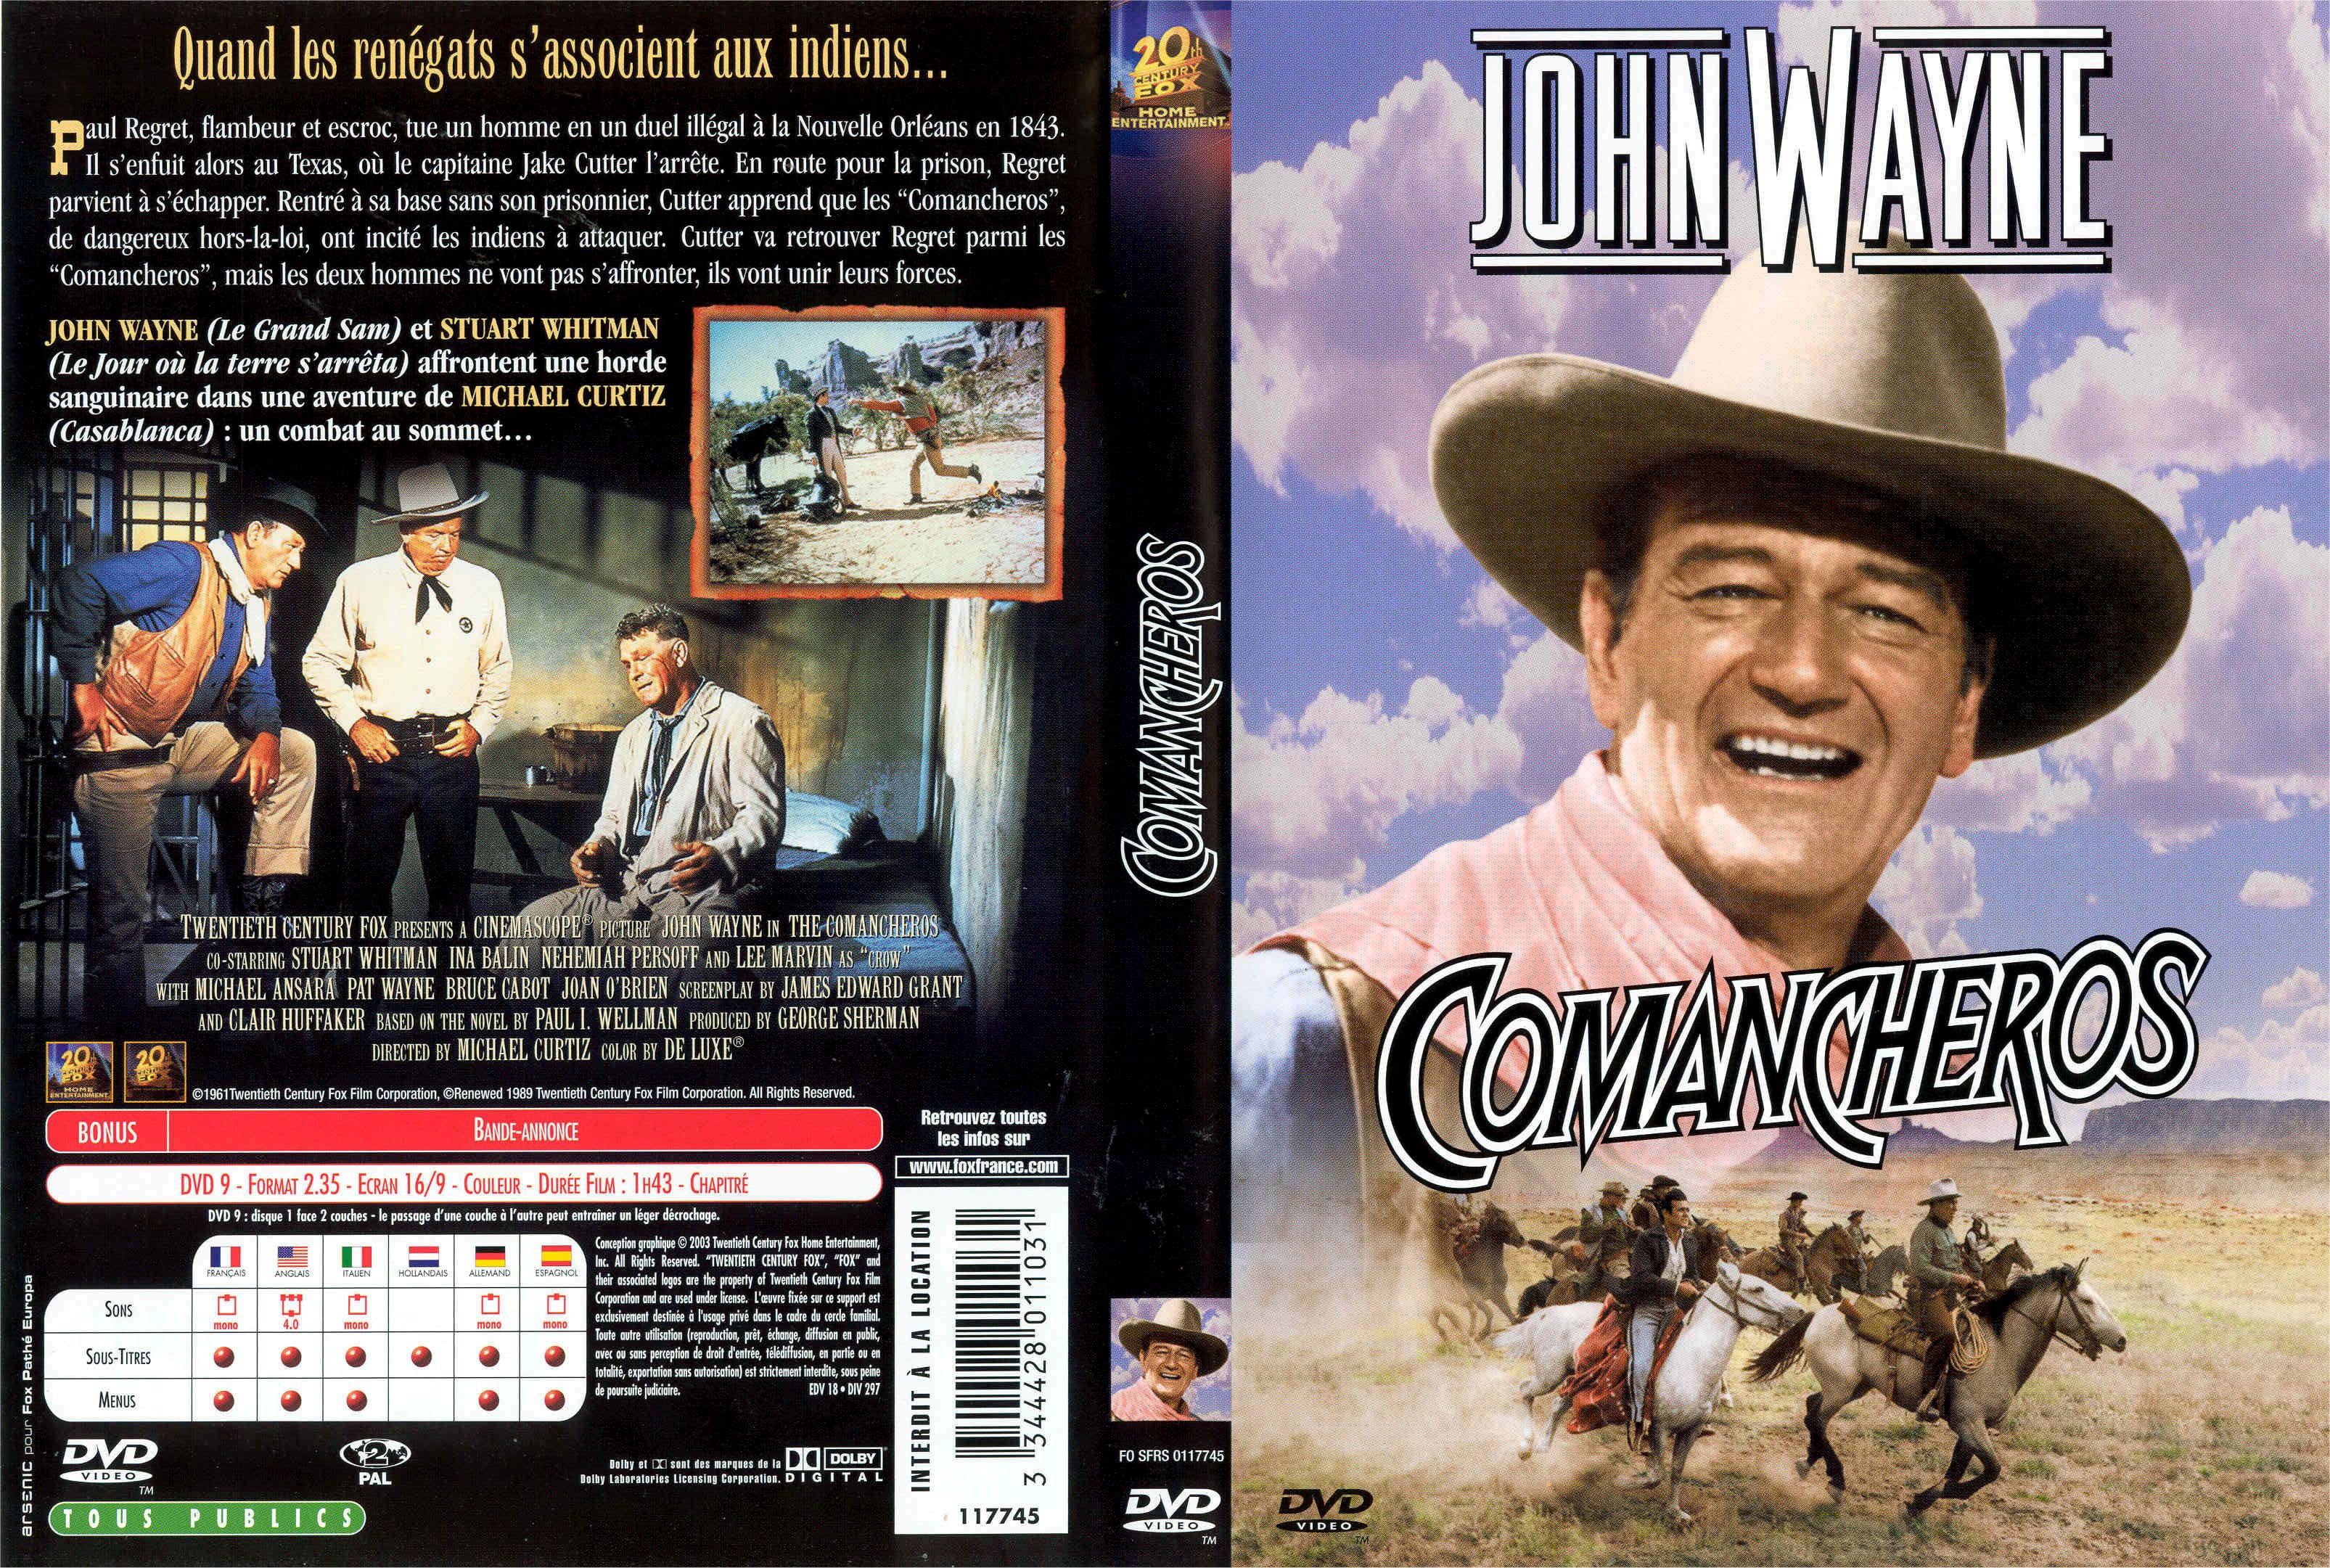 Jaquette DVD Comancheros